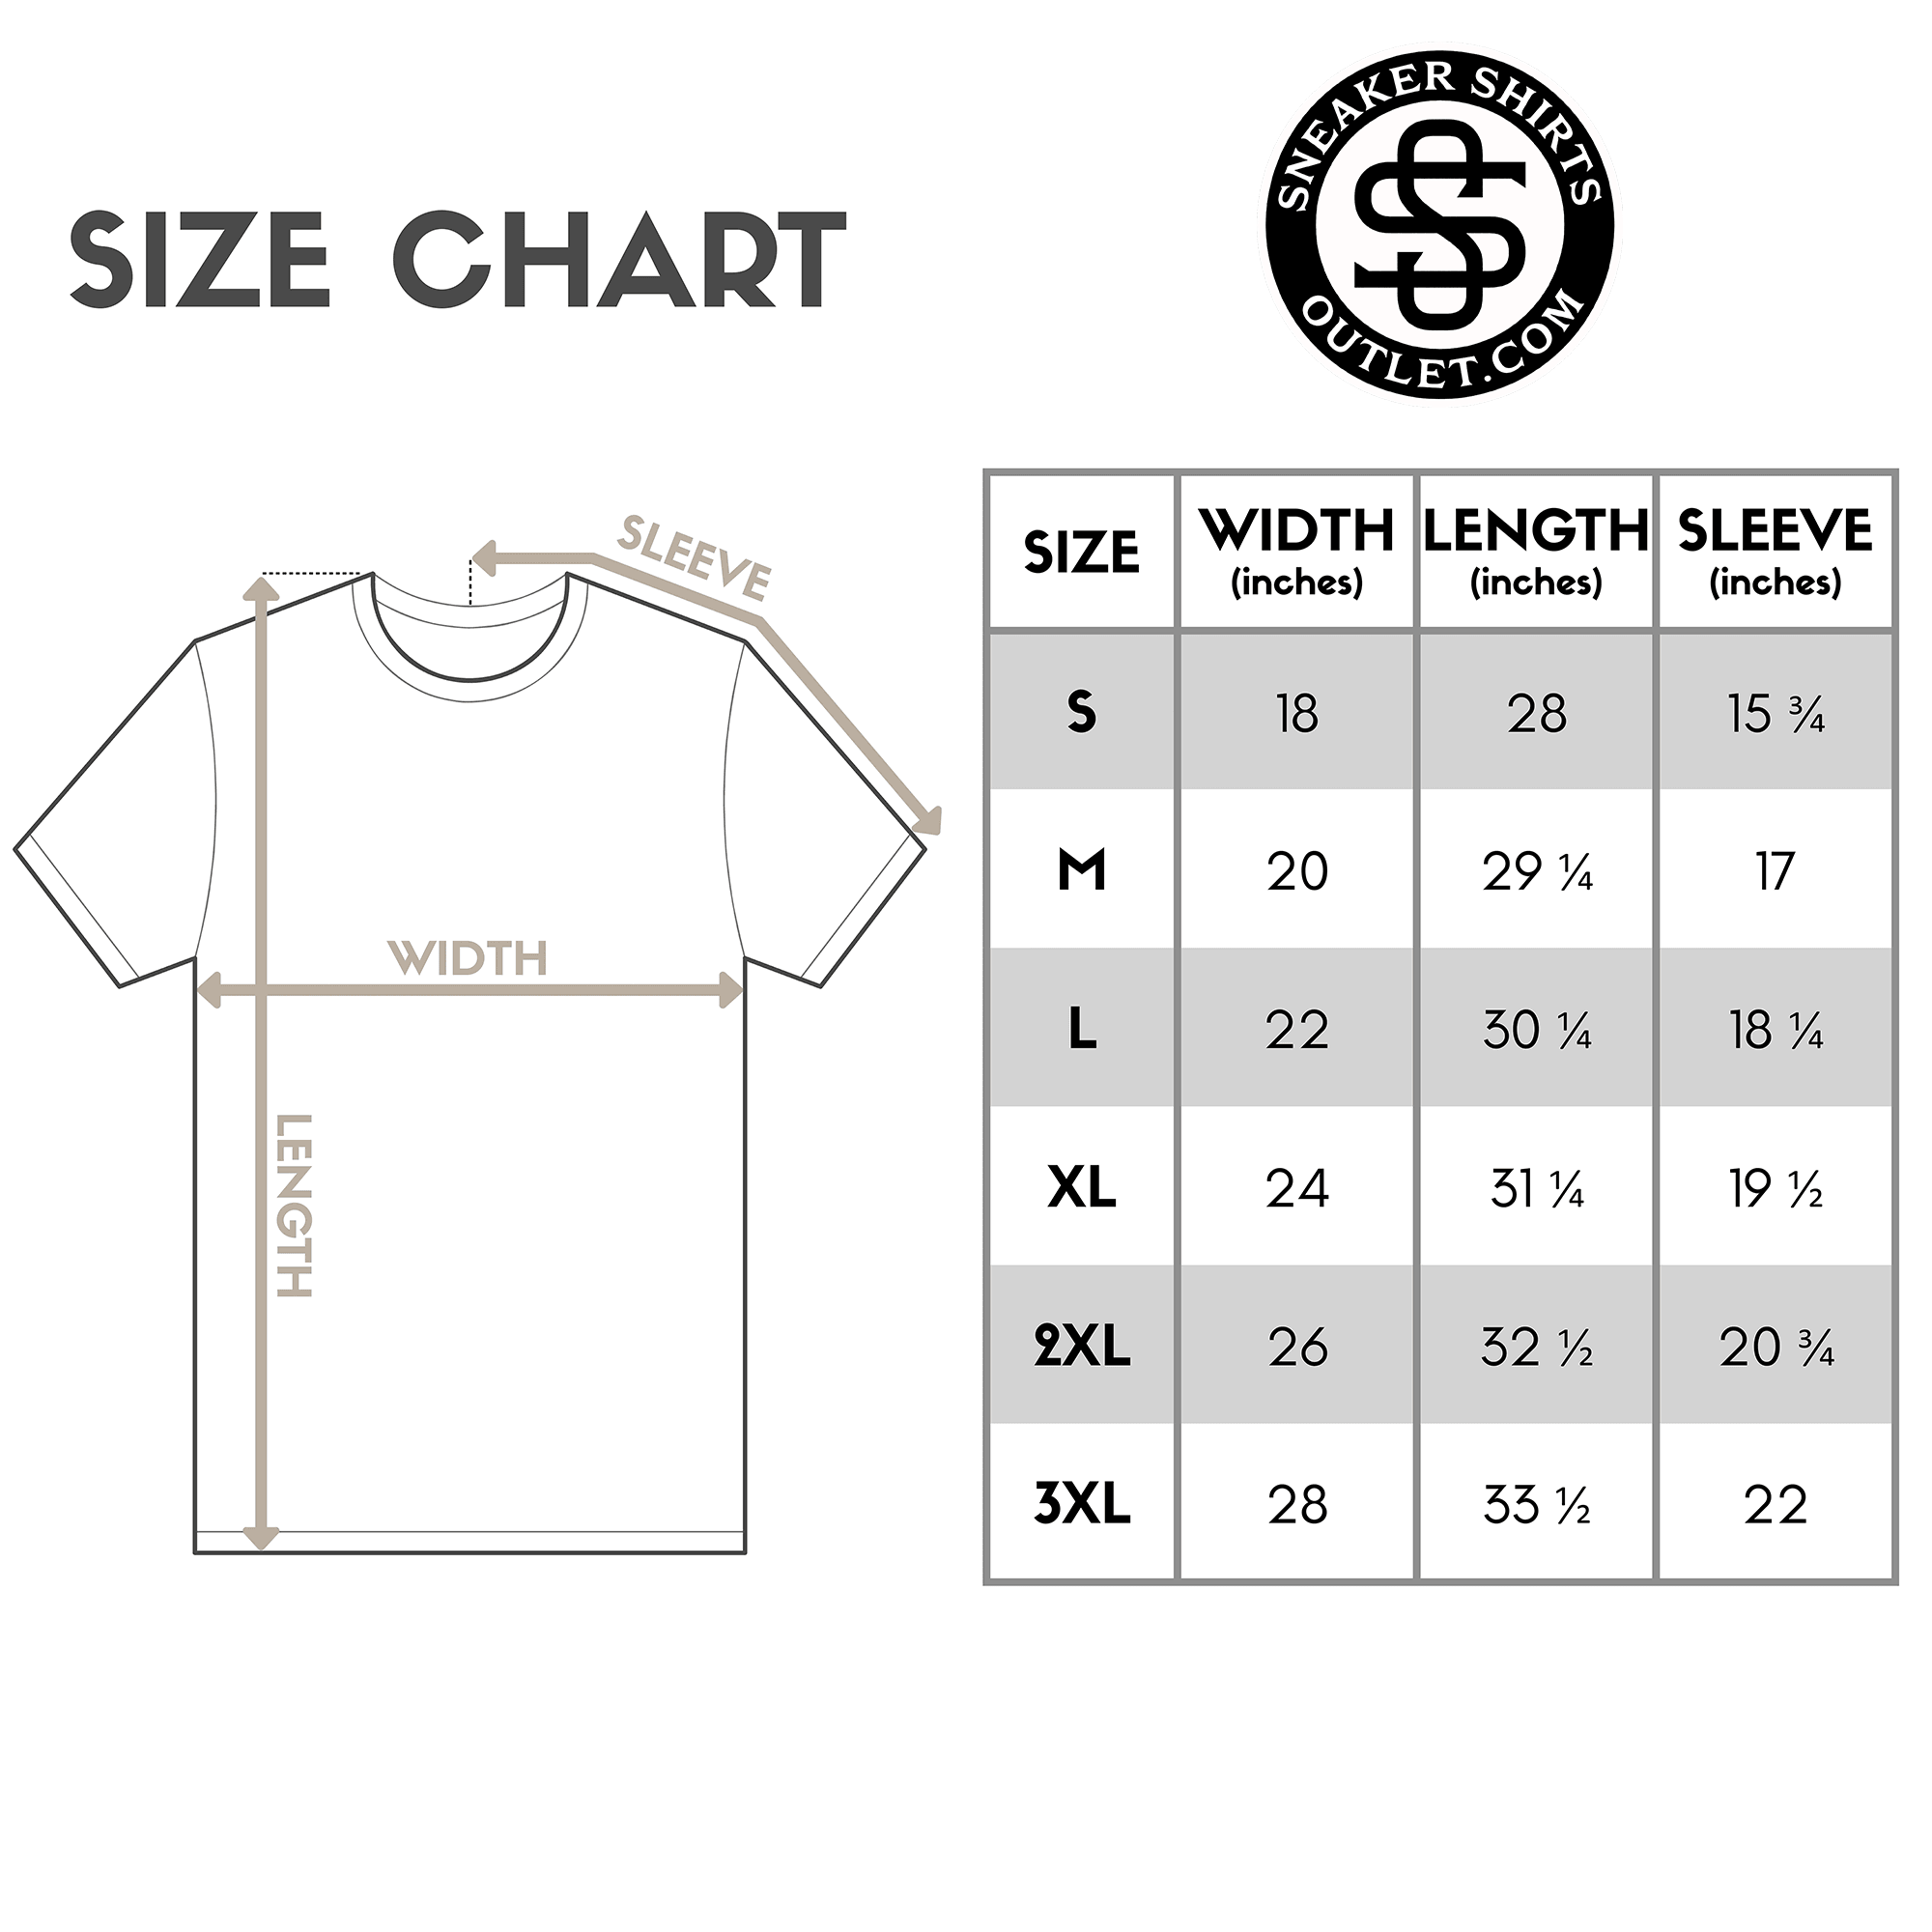 Stay Lit Pit Shirt size chart photo